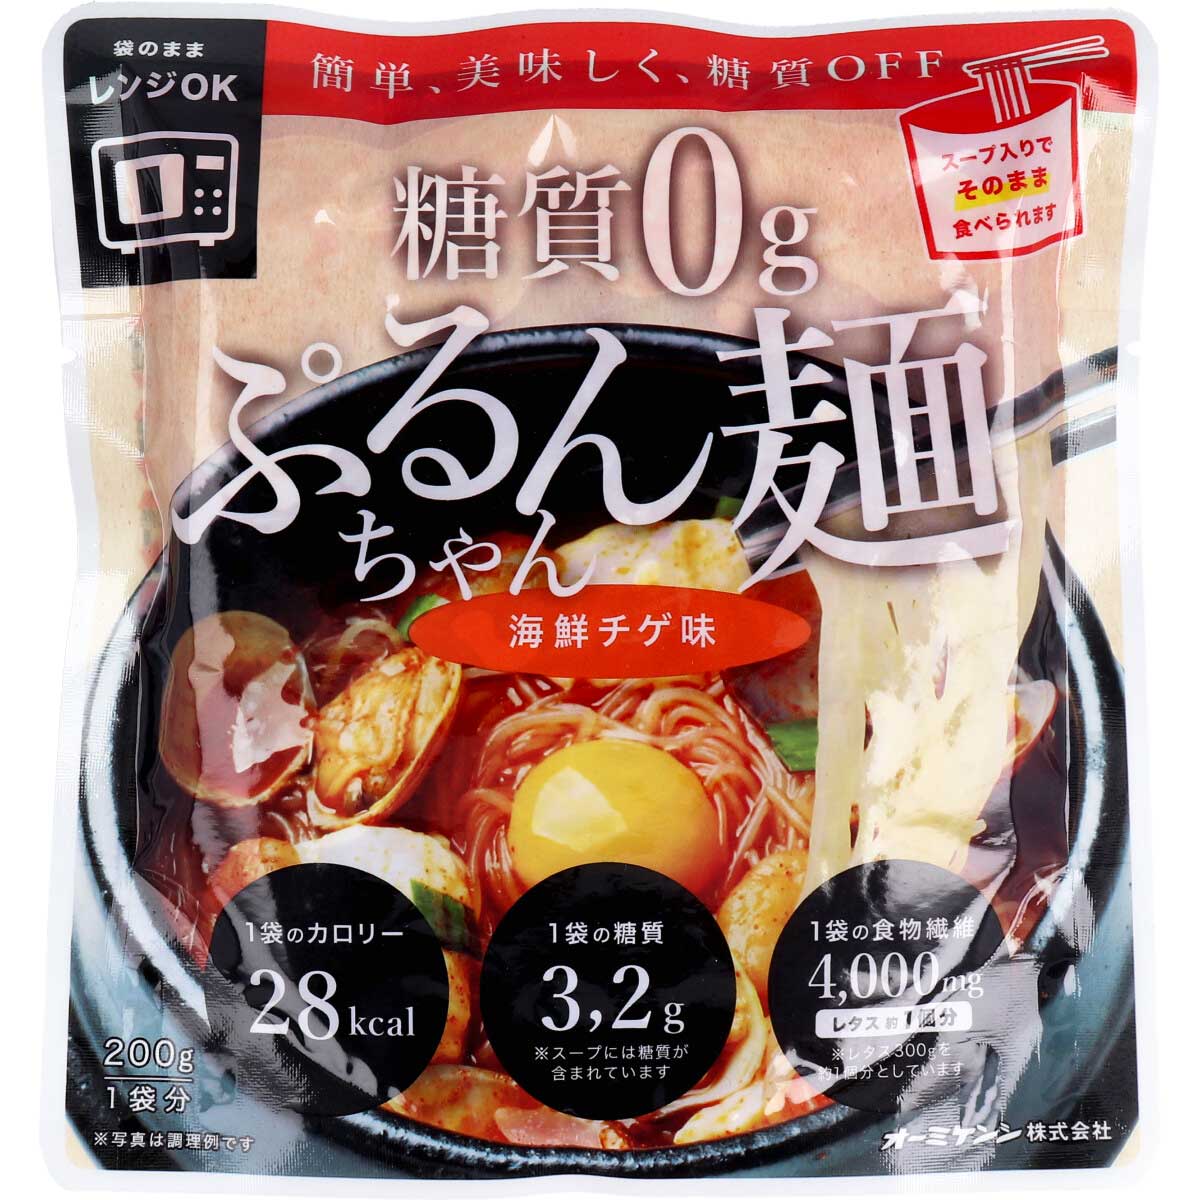 ※[販売終了]糖質0g ぷるんちゃん麺 海鮮チゲ味 1食分 200g